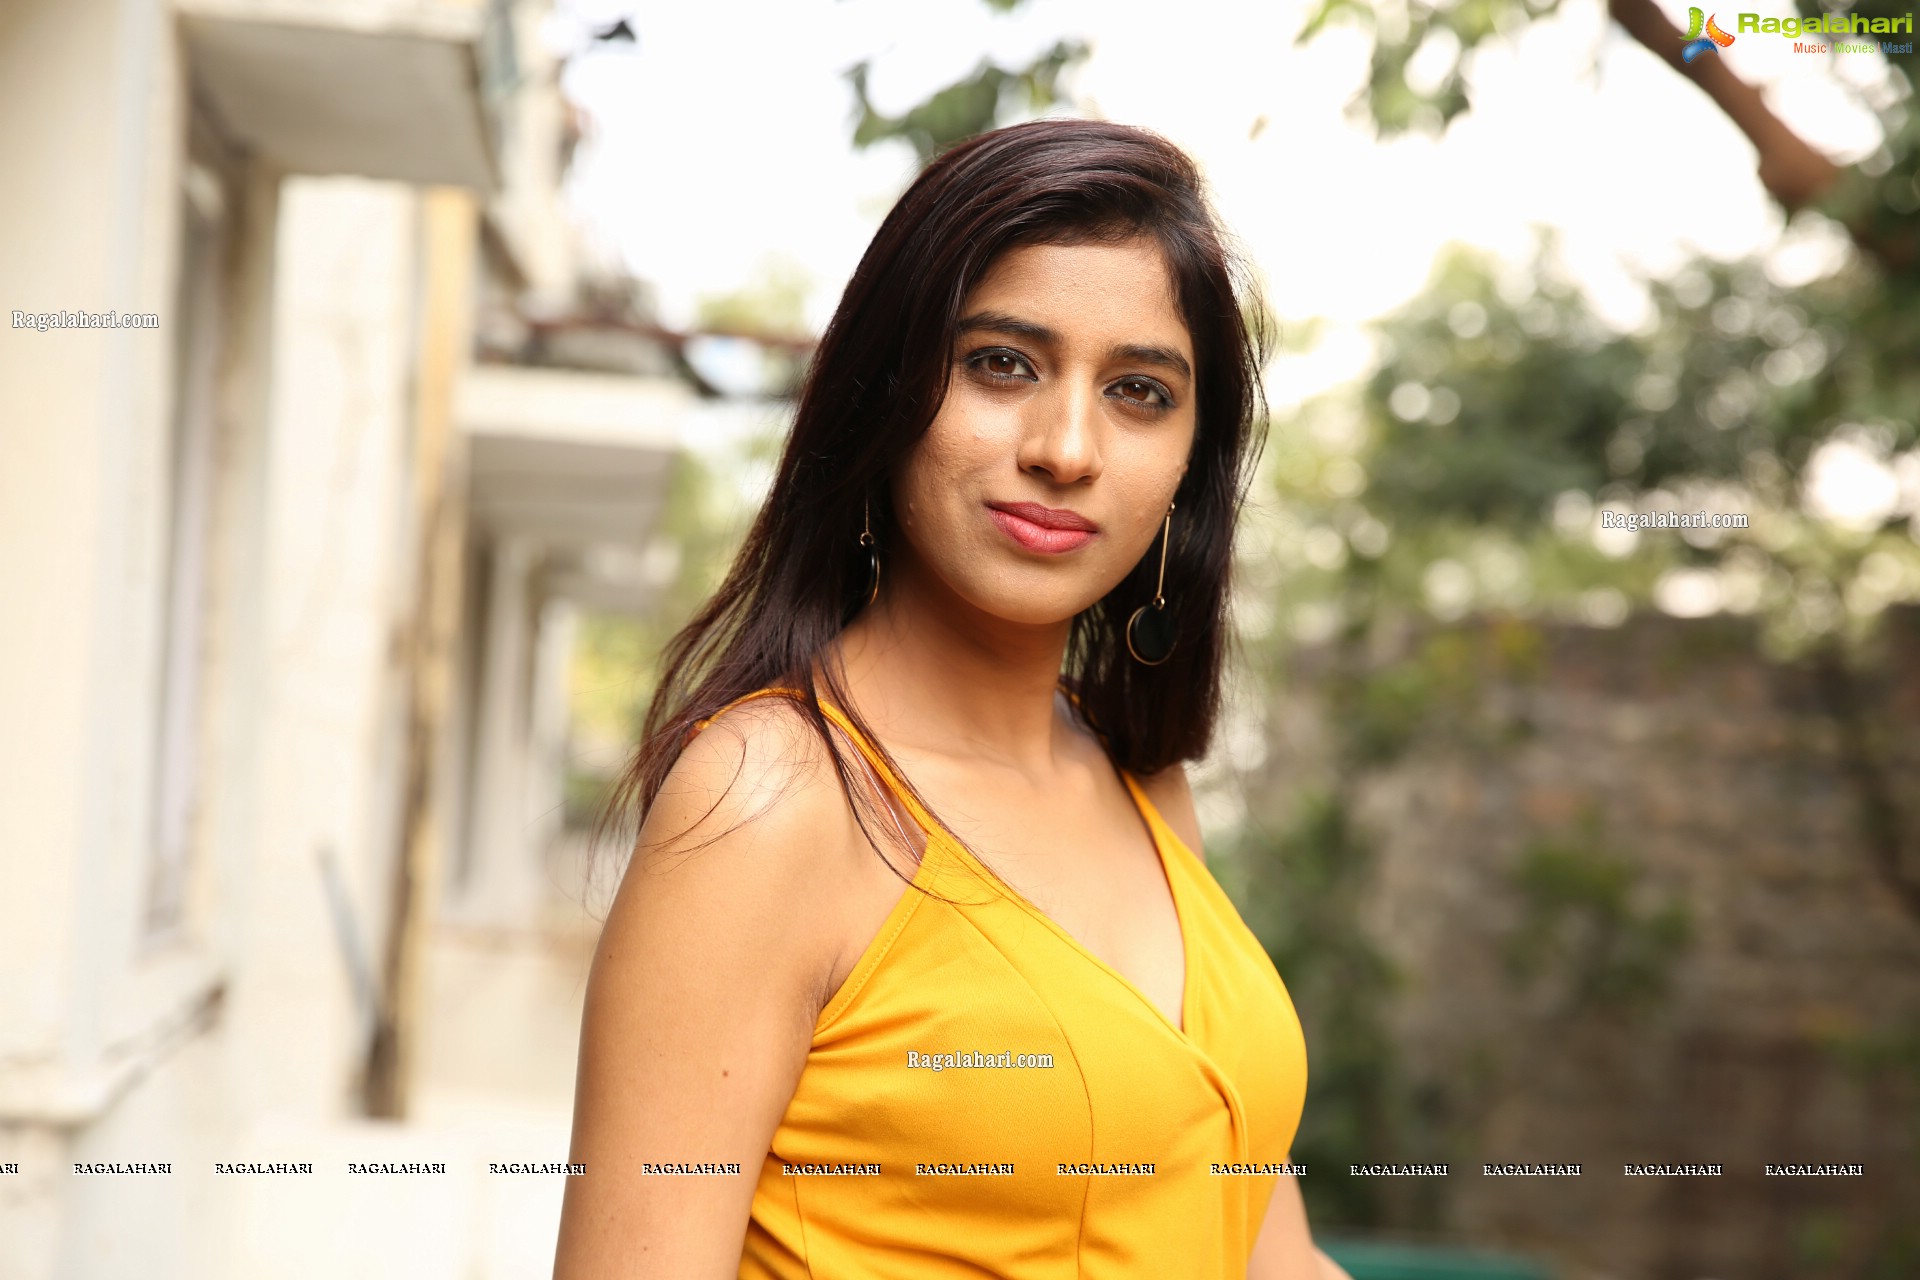 Naziya Khan at Yellow Spaghetti Strap Mini Dress, HD Photo Gallery